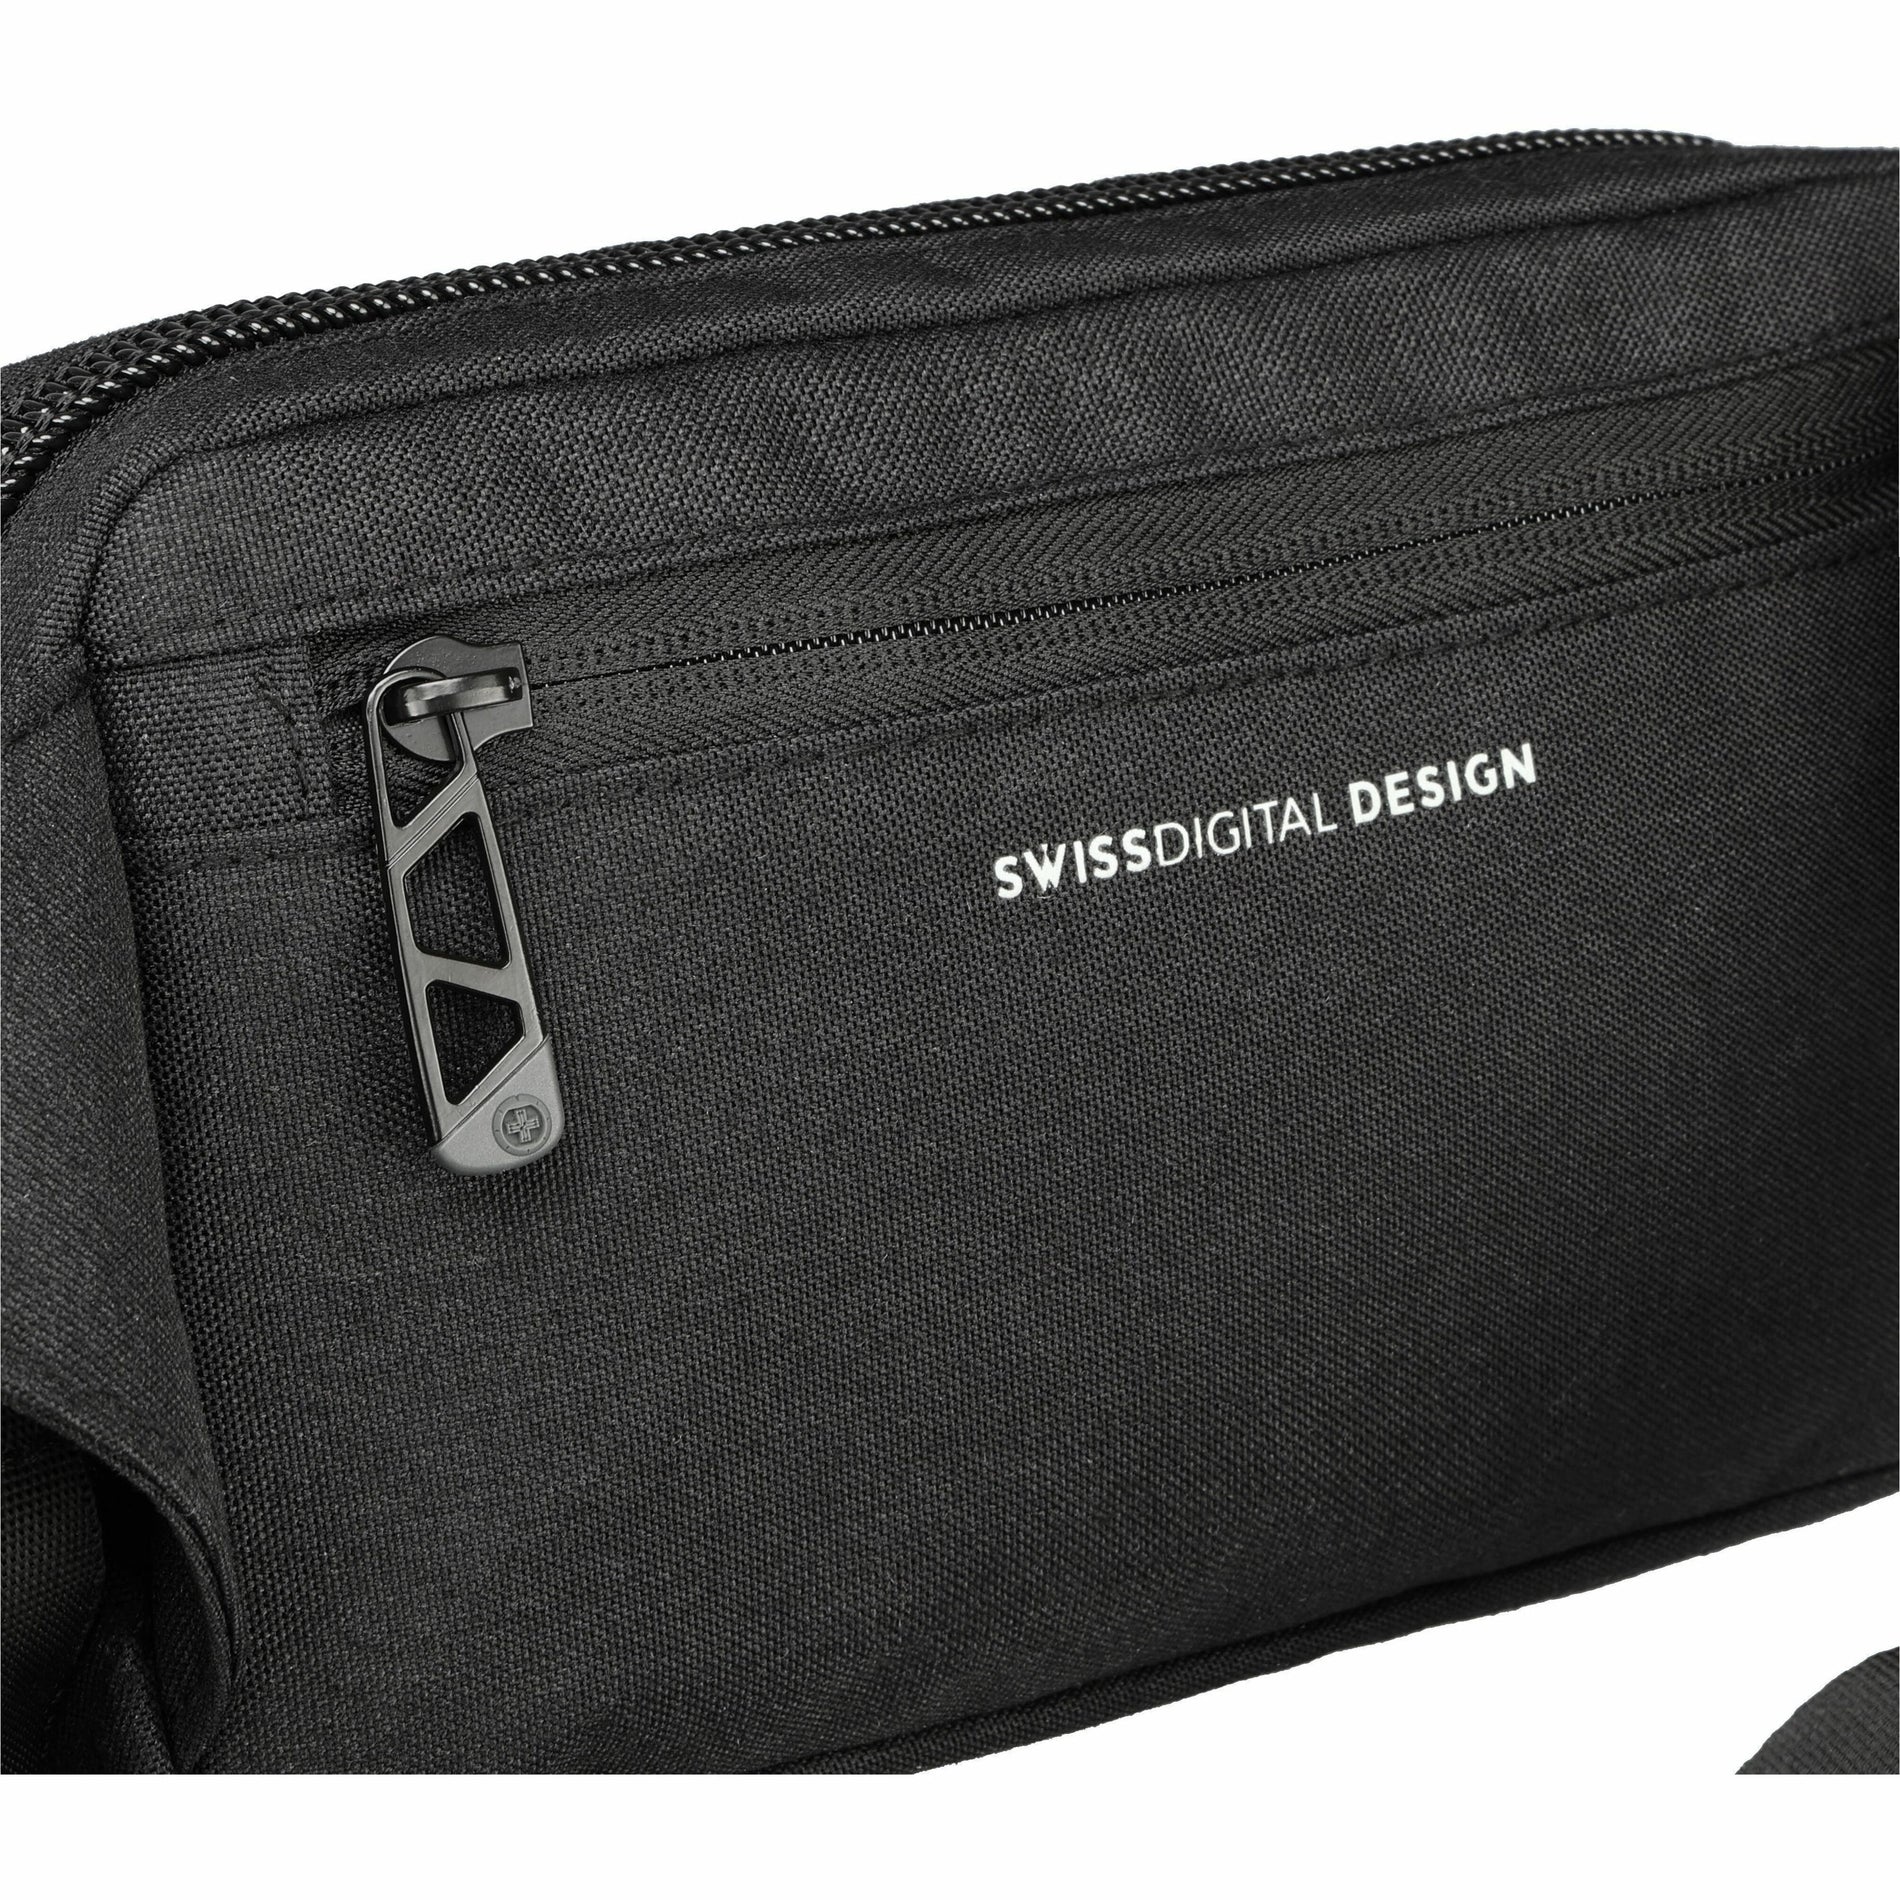 Swissdigital Design (SD952101) Carrying Cases (SD9521-01)